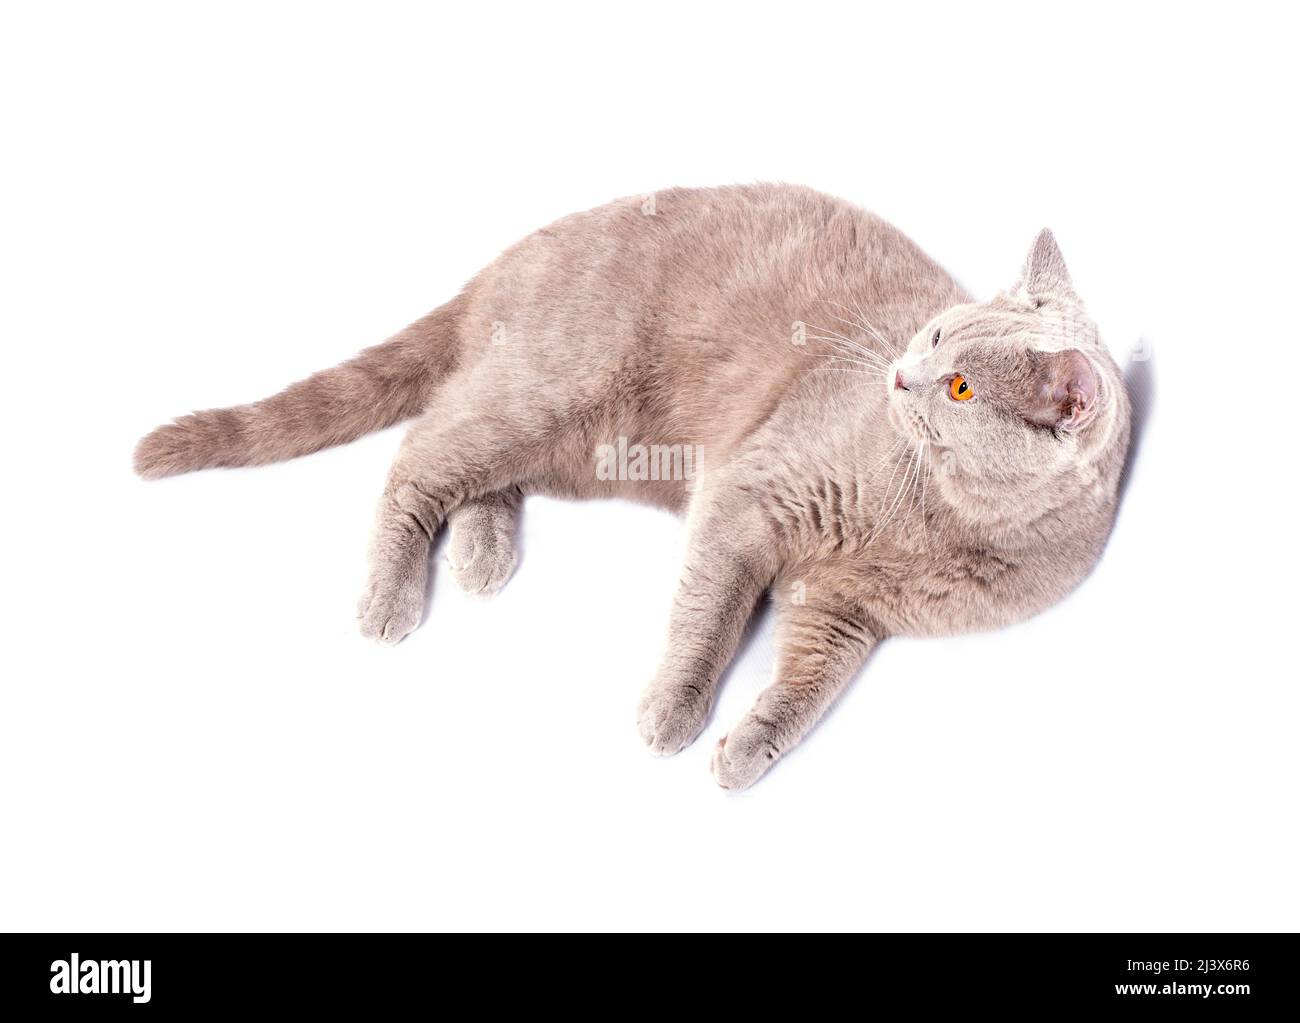 Bel gatto britannico con occhi arancioni che giacciono sul suo lato su uno sfondo bianco, immagine isolata, bellissimi gatti domestici, gatti in casa, animali domestici Foto Stock